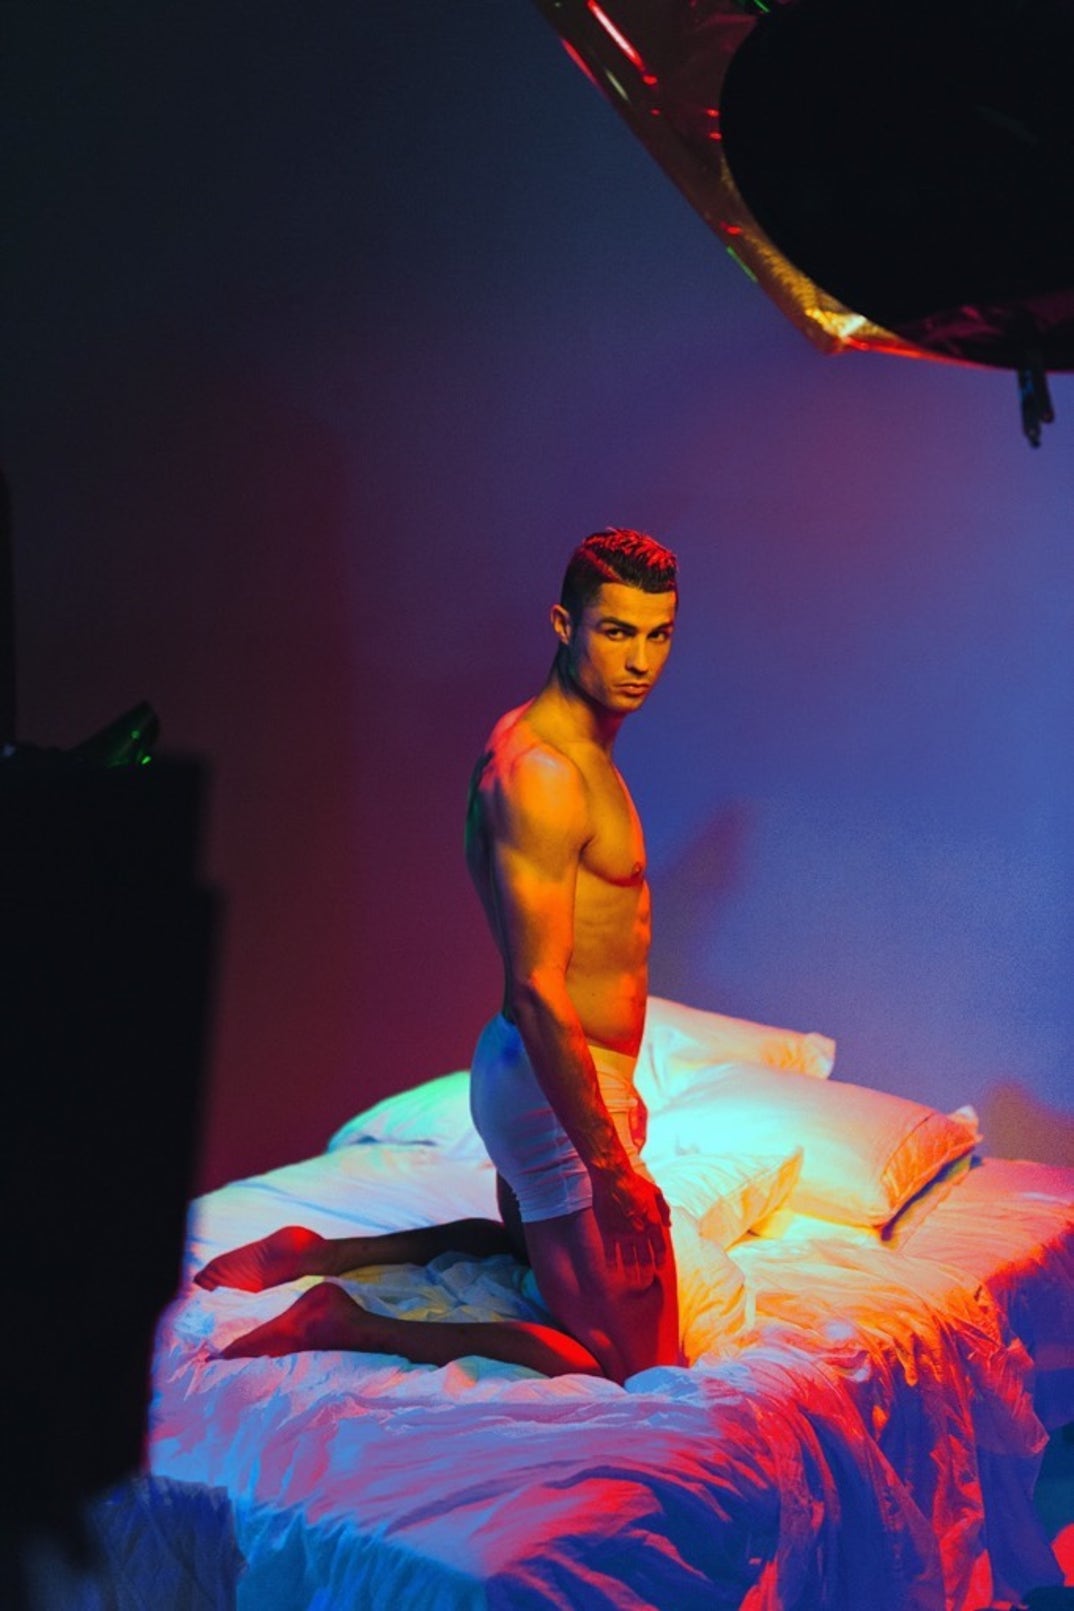 Cristiano Ronaldo Models New CR7 Underwear